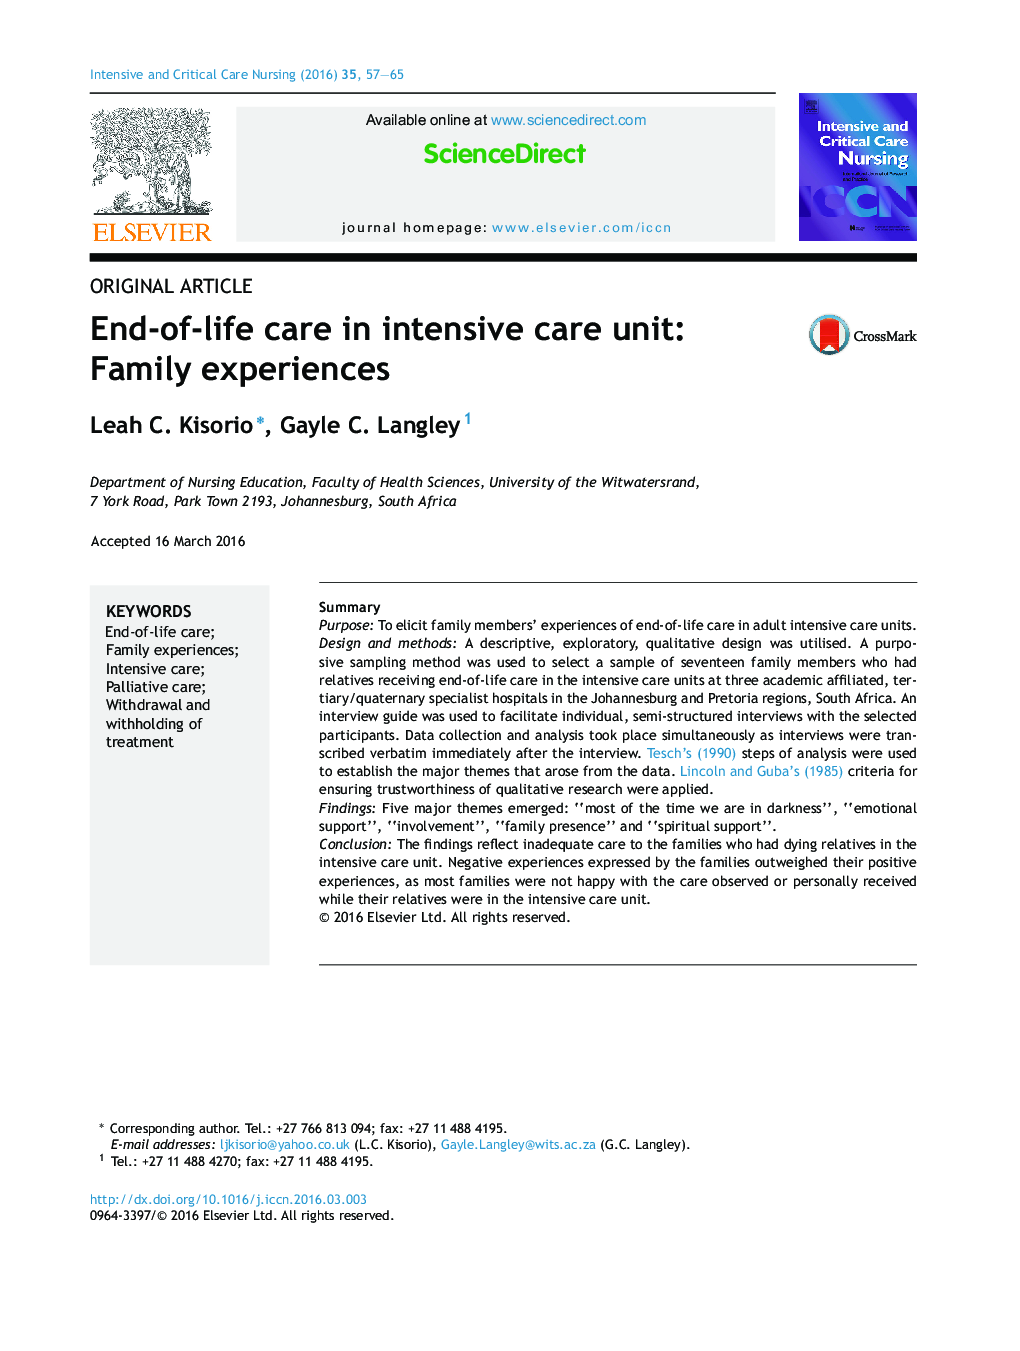 مراقبت پایان عمر در بخش مراقبت های ویژه: تجارب خانوادگی